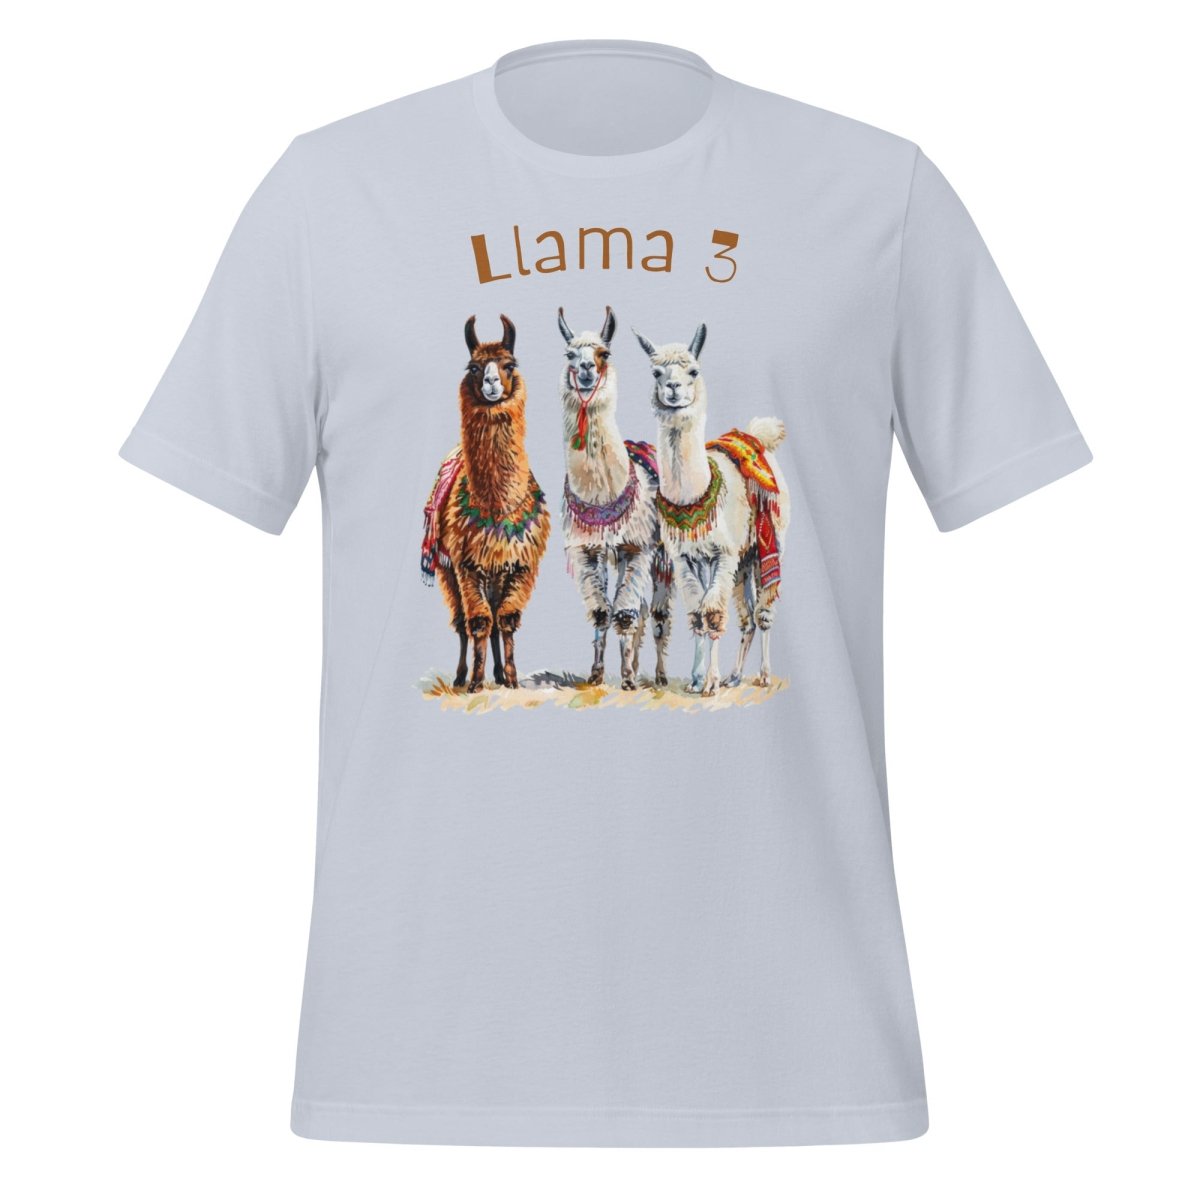 3 Llama 3 Llamas T - Shirt (unisex) - Light Blue - AI Store